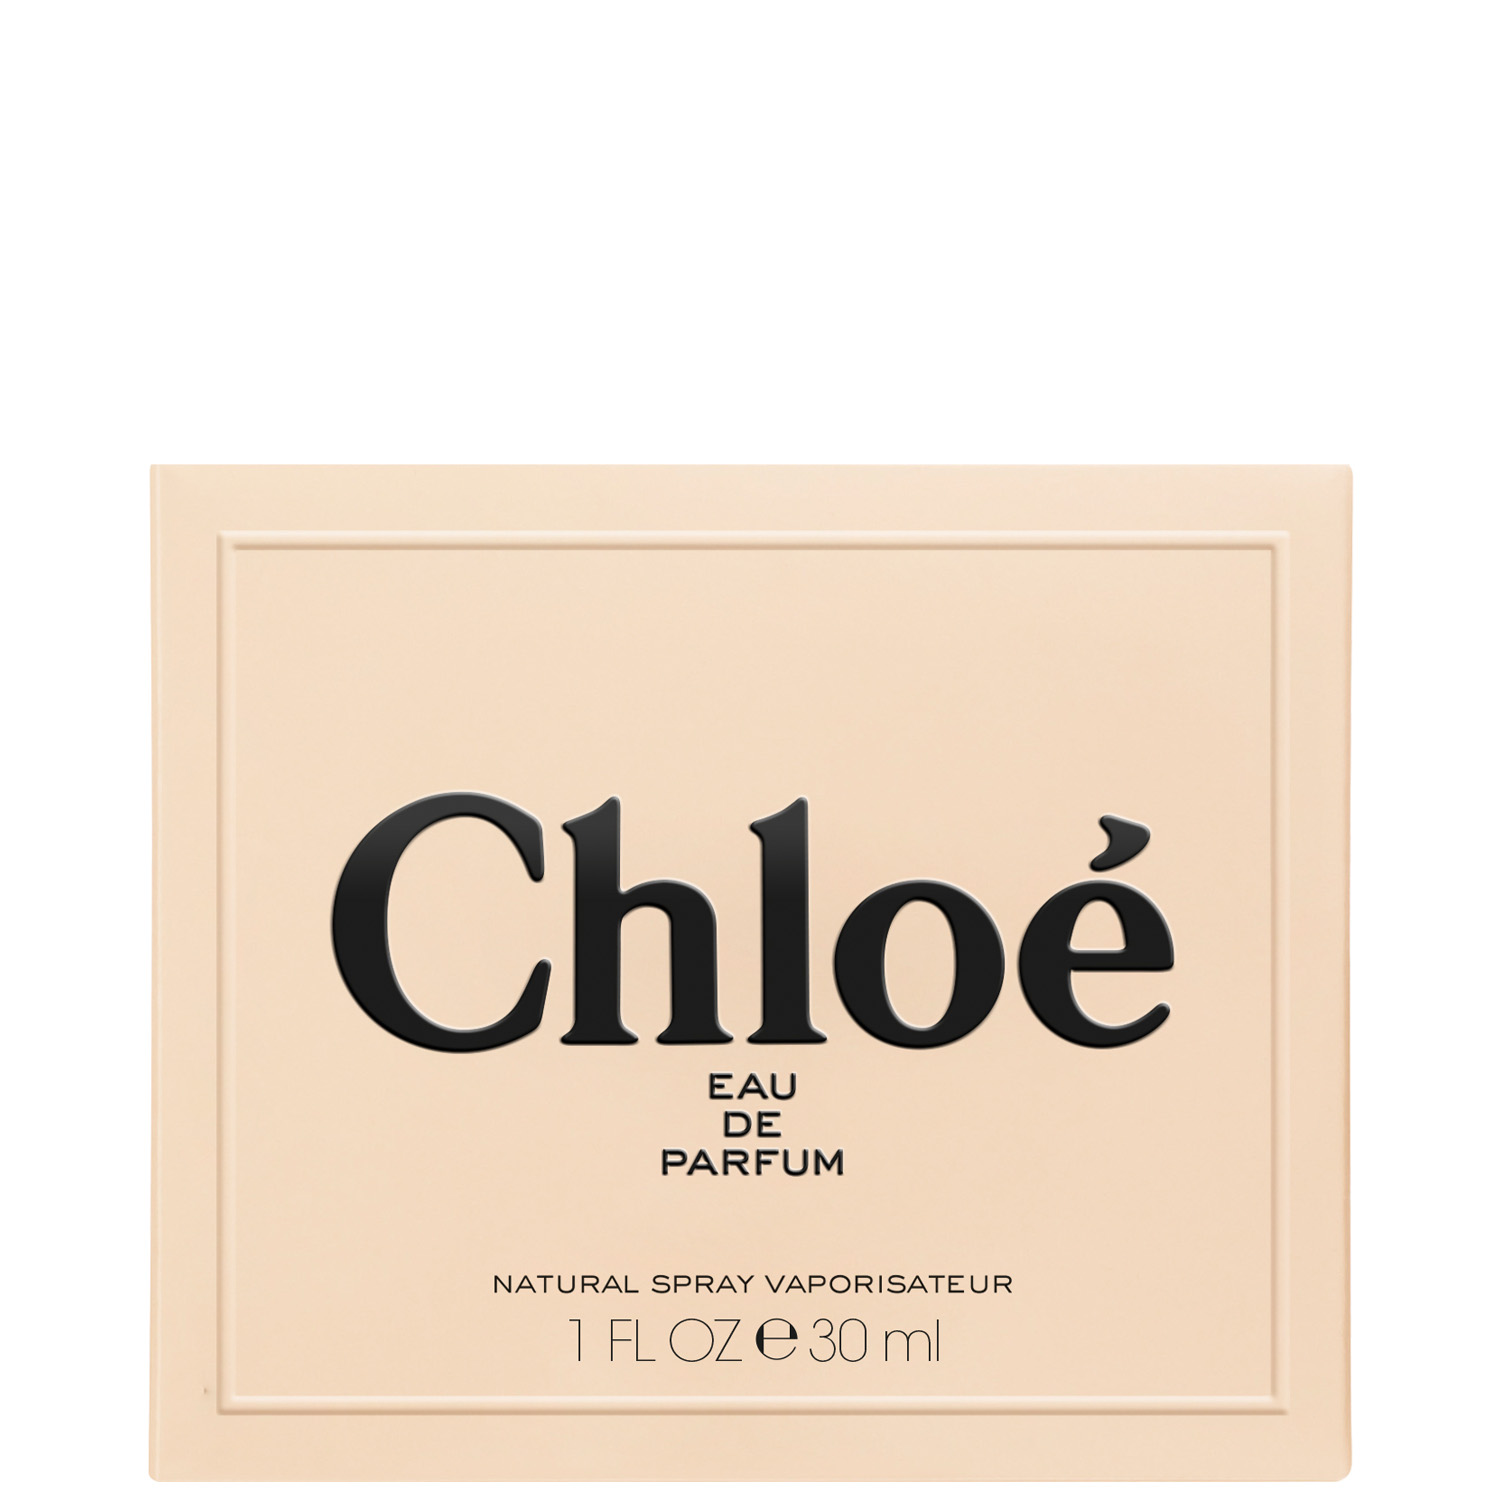 Chloé by Chloé Eau de Parfum 30ml